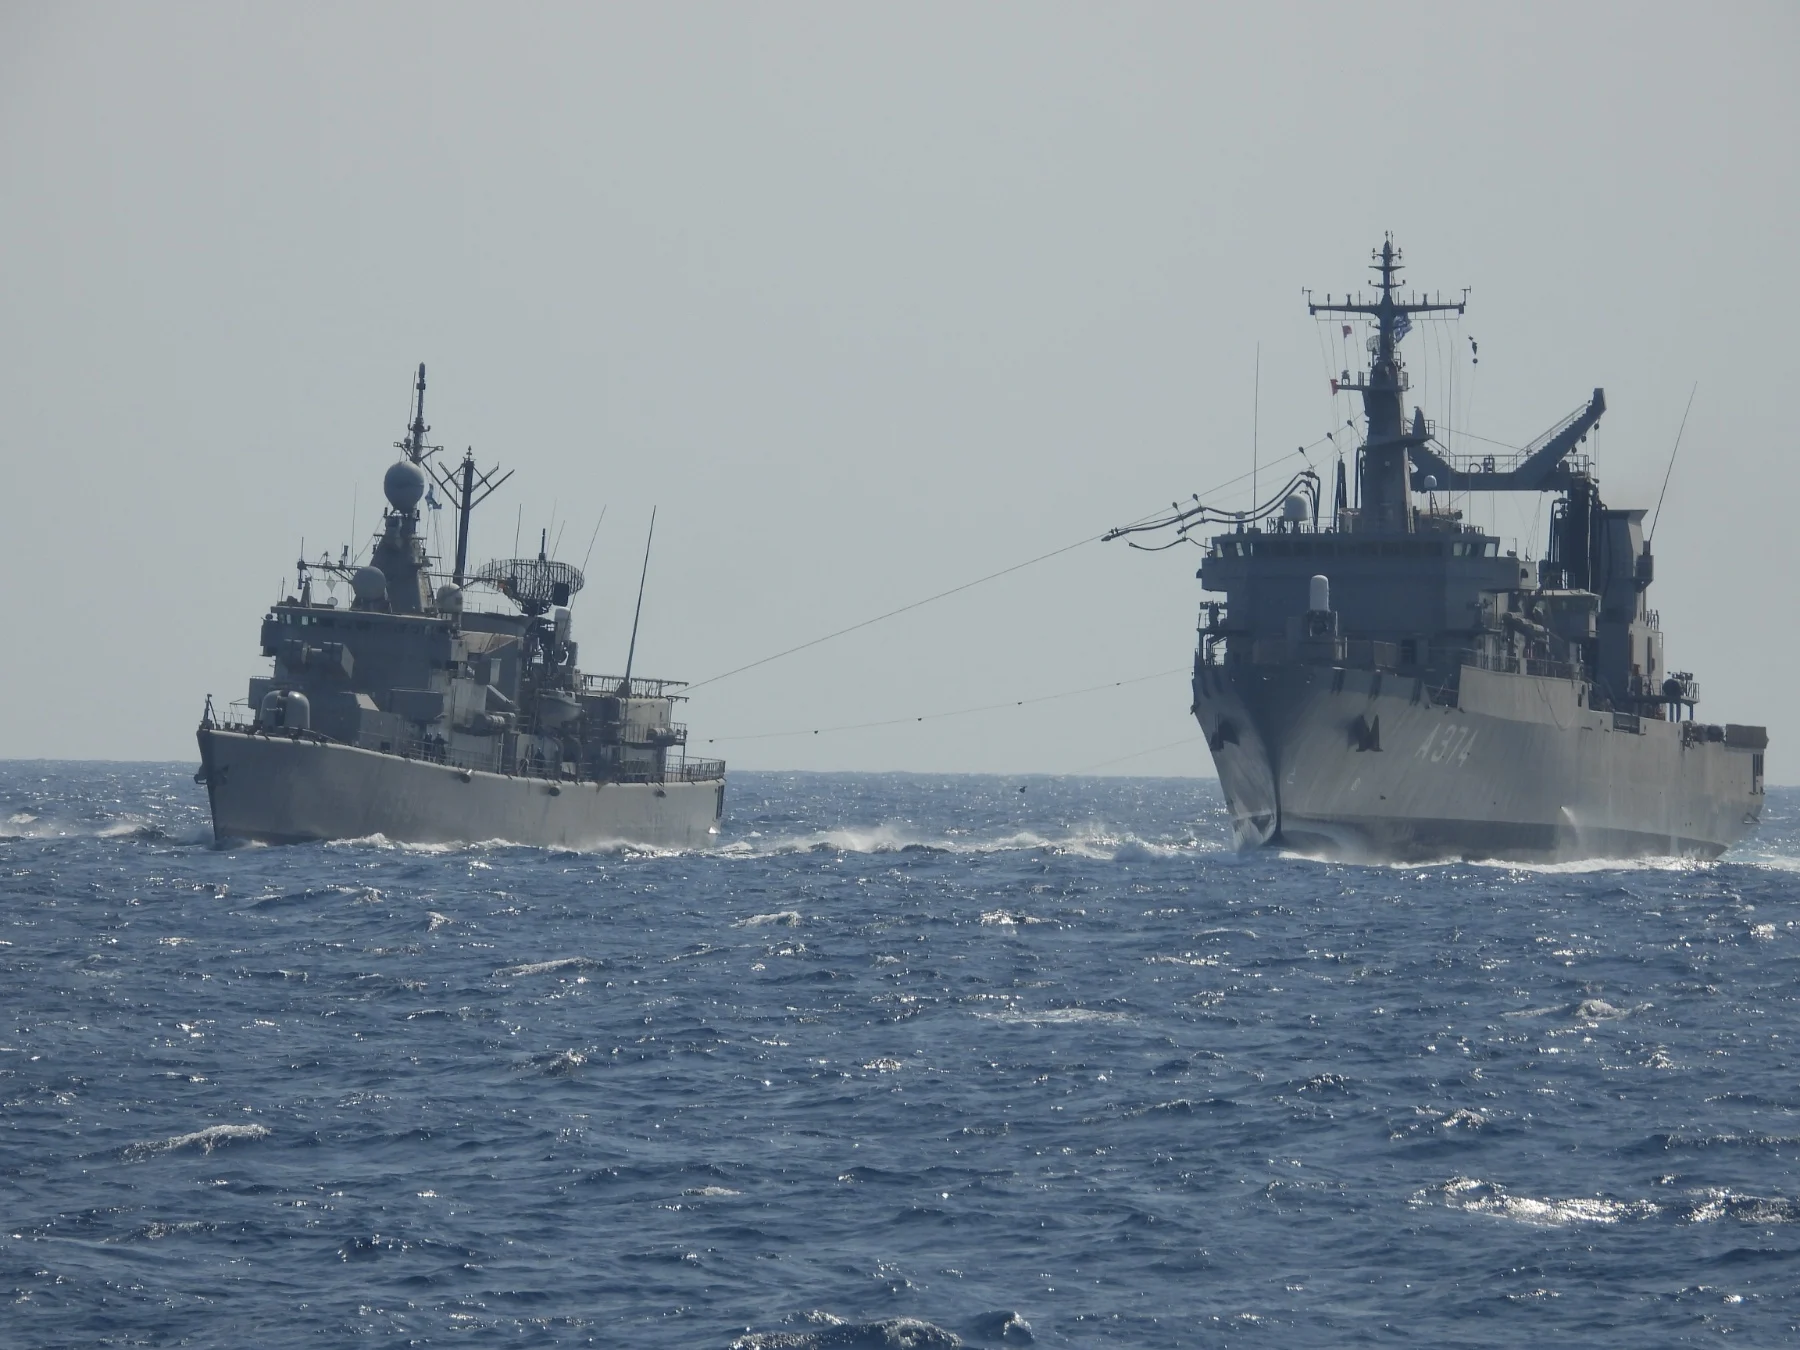 Οι μεγάλες προκλήσεις του Πολεμικού Ναυτικού την ώρα που η Τουρκική επιθετικότητα κορυφώνεται – Οι προτεραιότητες στα εξοπλιστικά προγράμματα